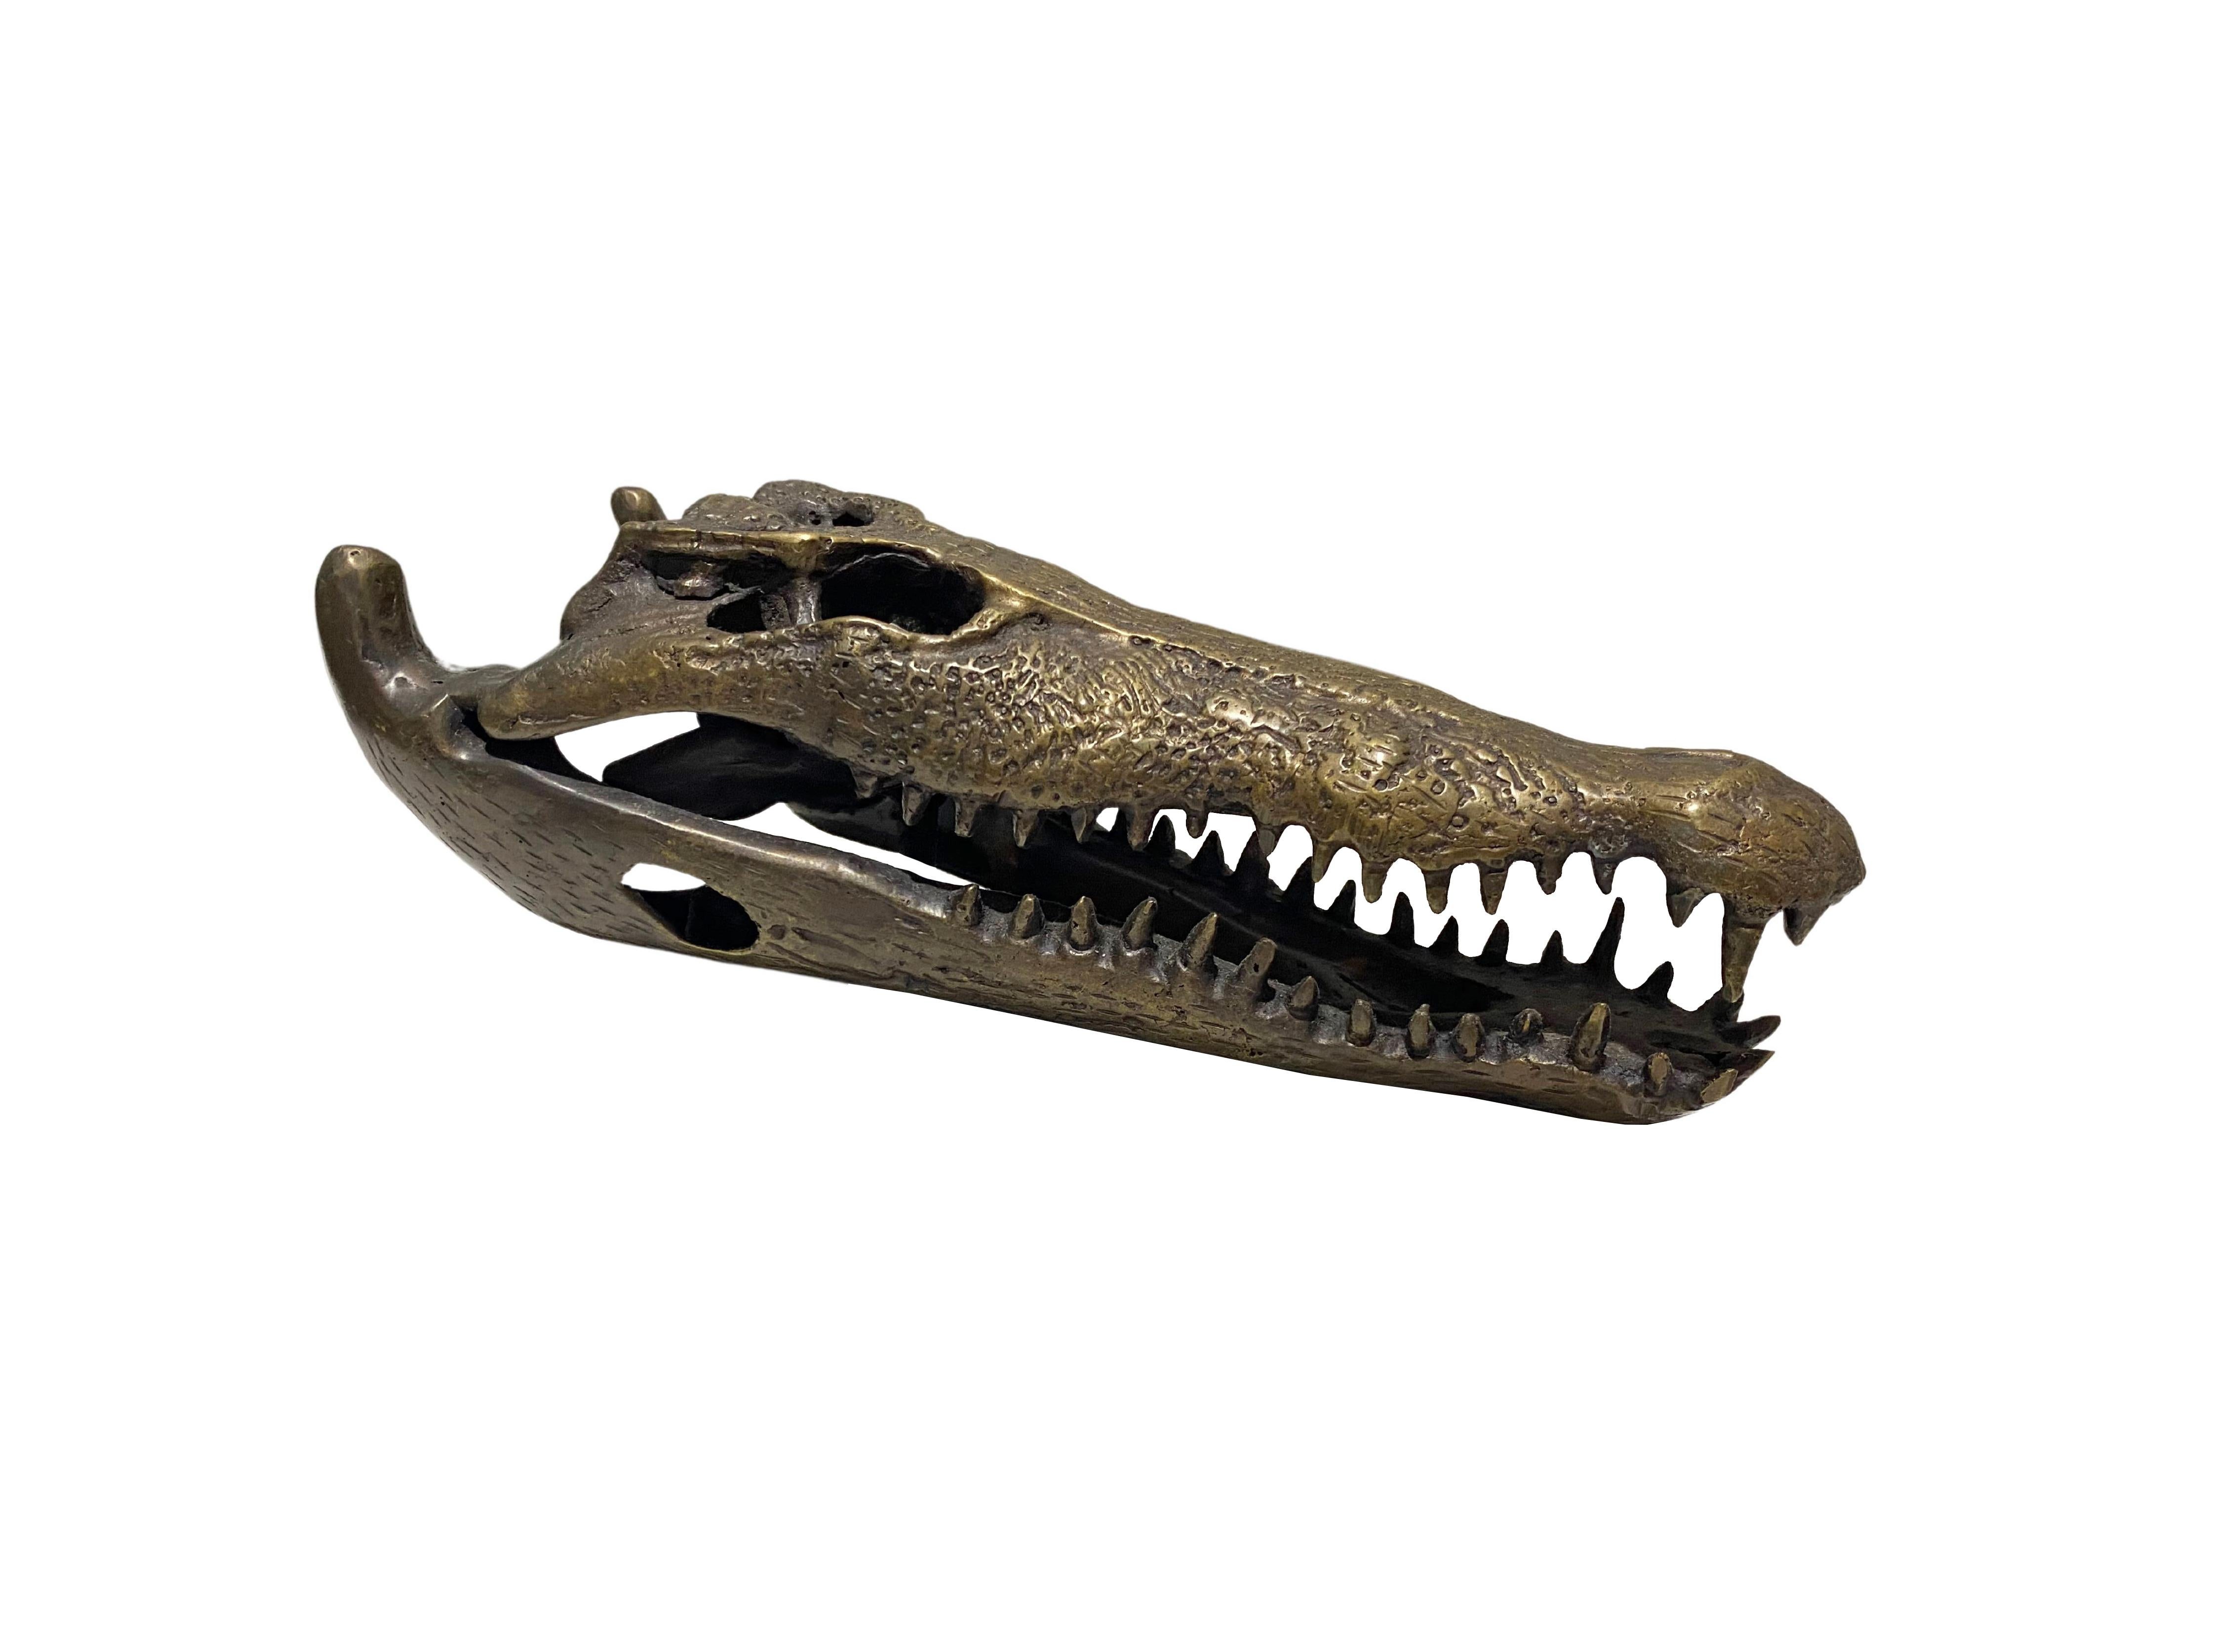 Un magnifique exemple de crâne de crocodile en bronze coulé en creux. Cette pièce présente de merveilleux détails et ressemble à un véritable spécimen. Une pièce exotique qui ne manquera pas de susciter la conversation. Convient aux espaces